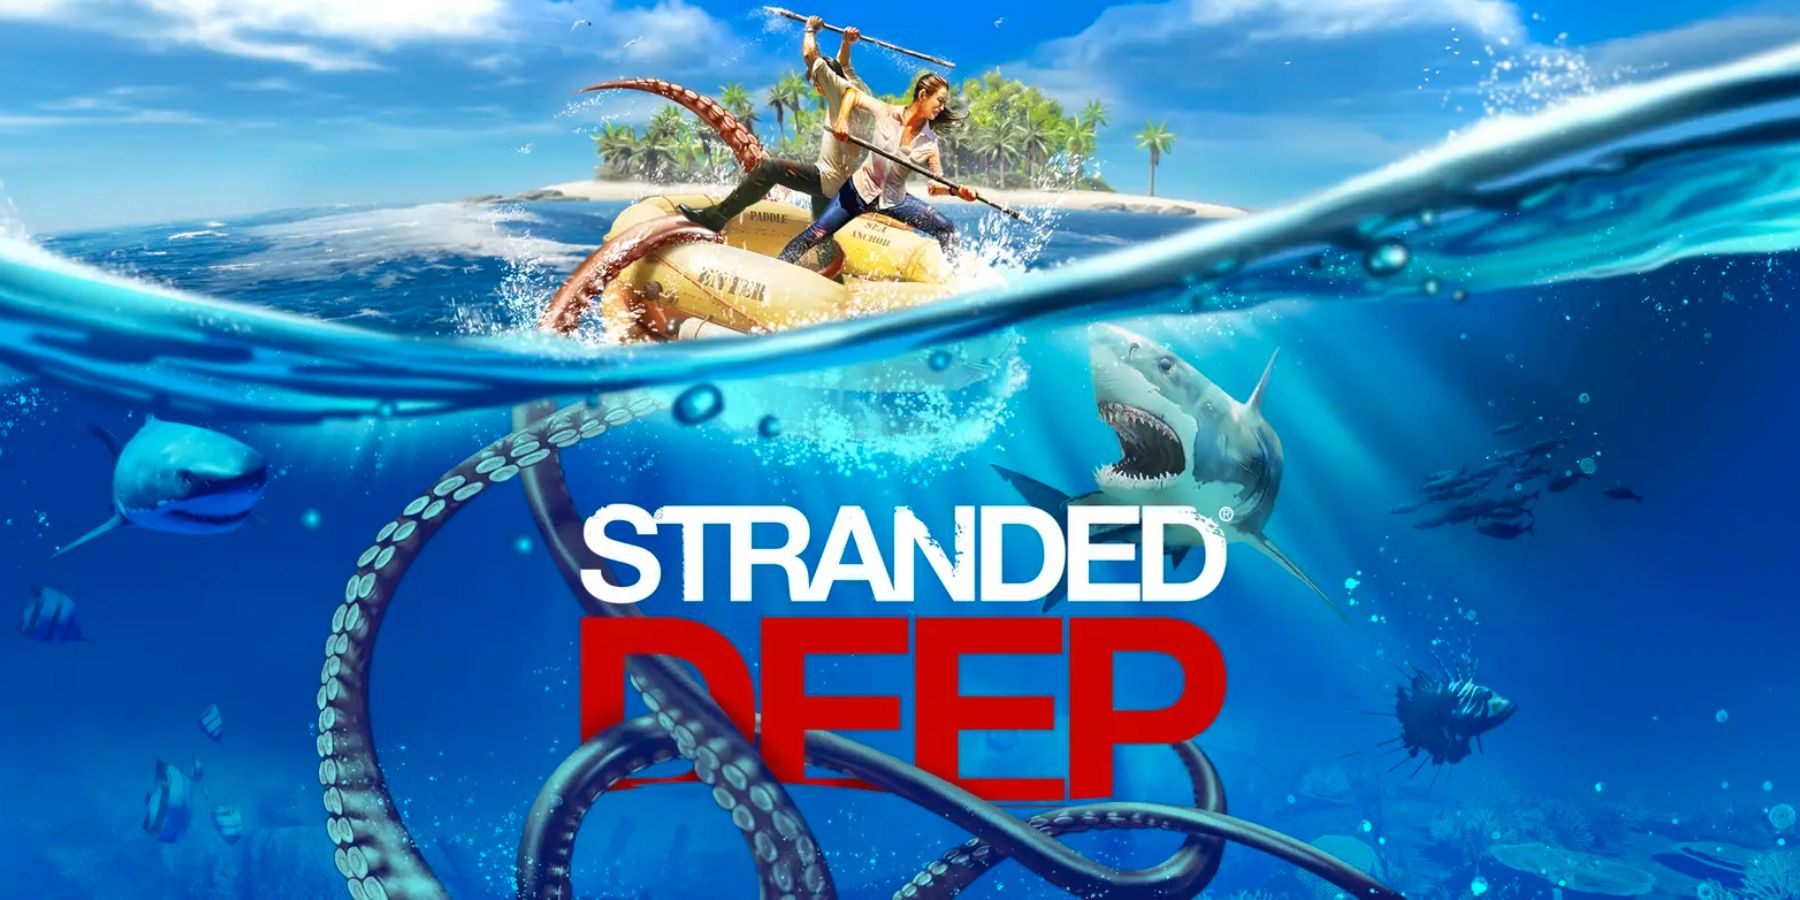 Stranded Deep is online coöperatie via een gratis update die morgen komt